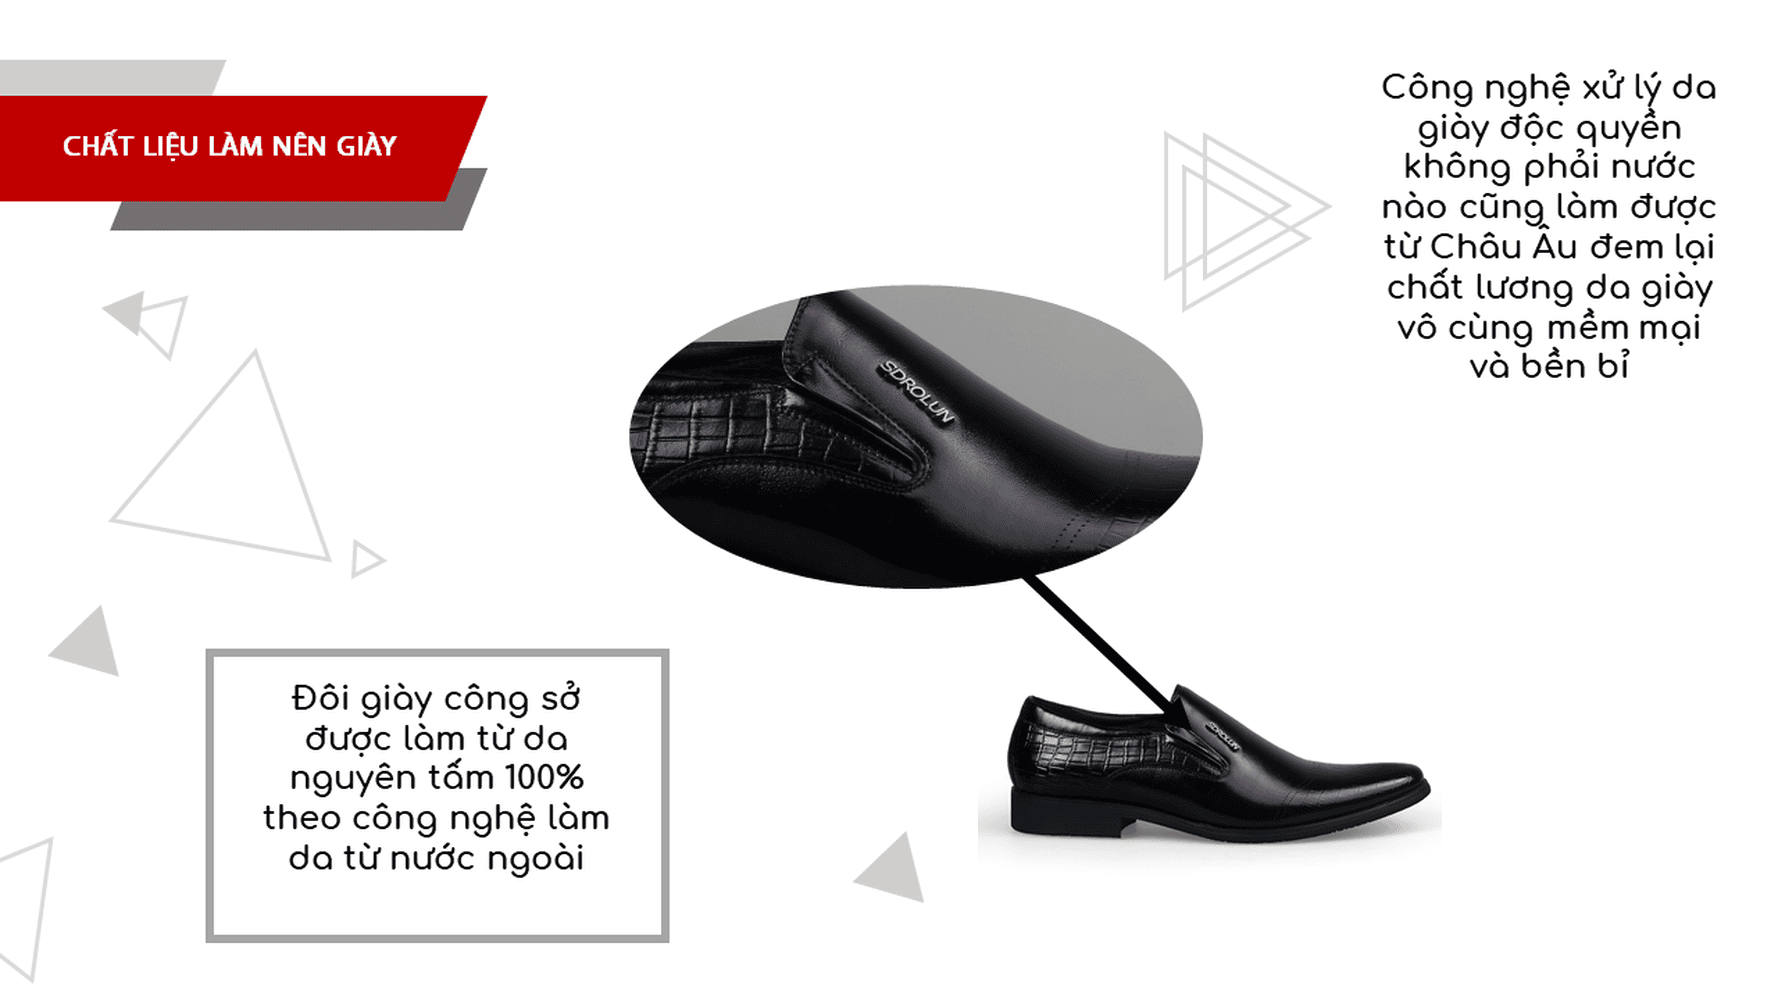 Giày lười sdrolun nhập khẩu đen ánh quang 2018; Mã số GL30095170D5